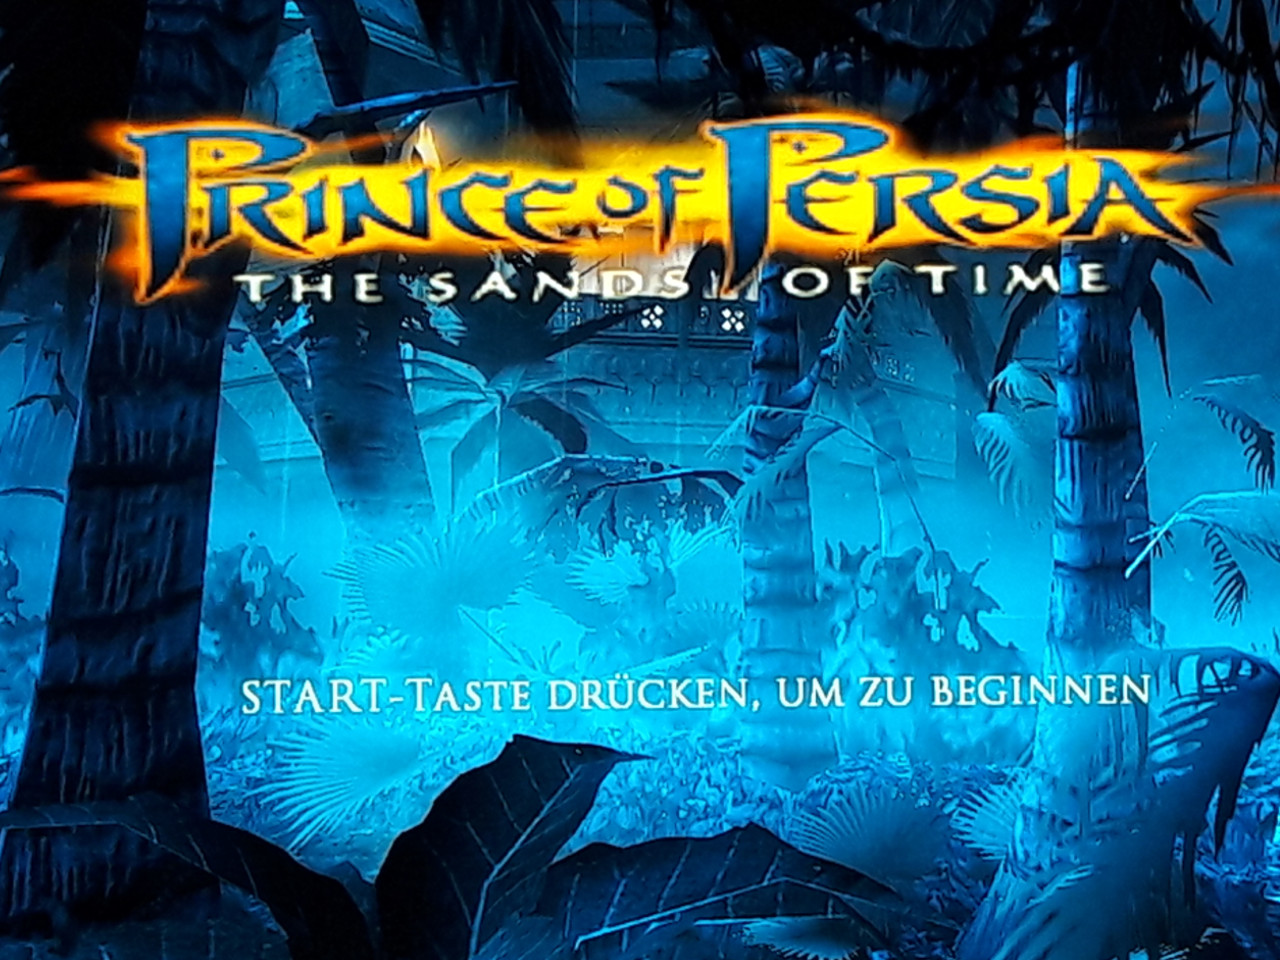 Der Startbildschirm von Prince of Persia: The Sands of Time. (Bild: Michaela Rücker)